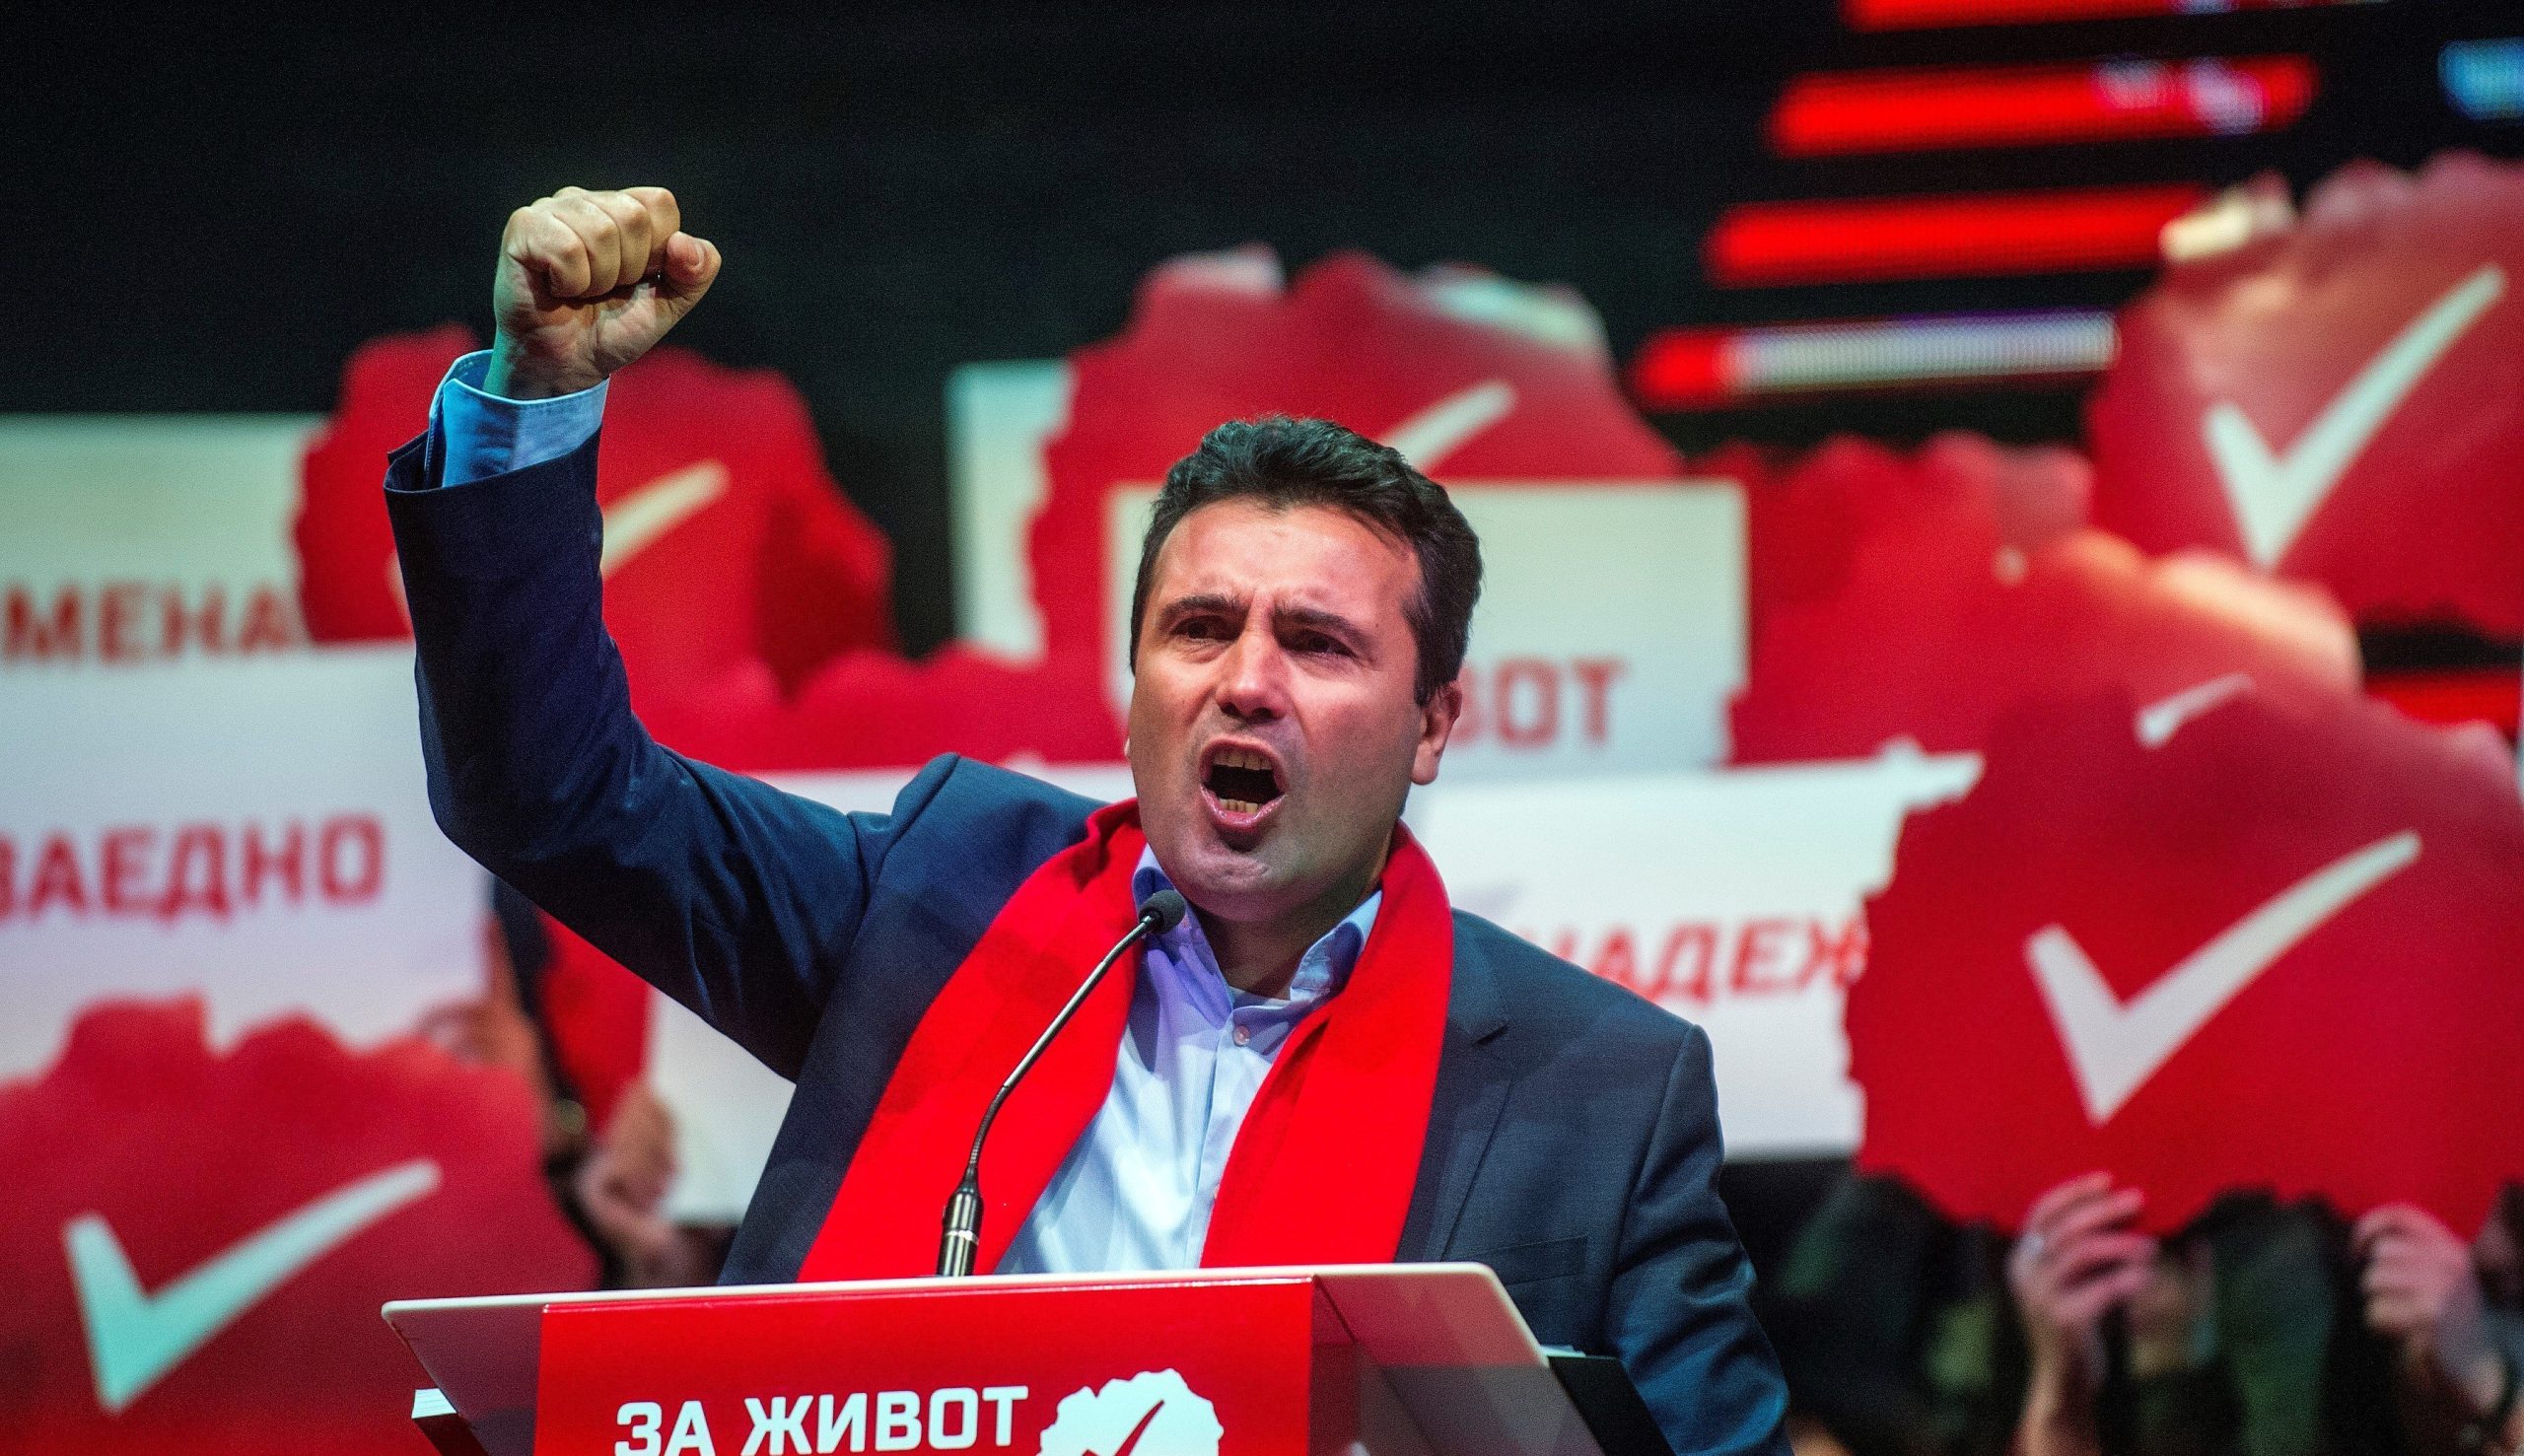 Σκόπια: Σαφής επικράτηση του Ζ.Ζάεφ στις δημοτικές εκλογές – Καταποντίστηκε το κόμμα του «χαμένου» Ν.Γκρουέφσκι